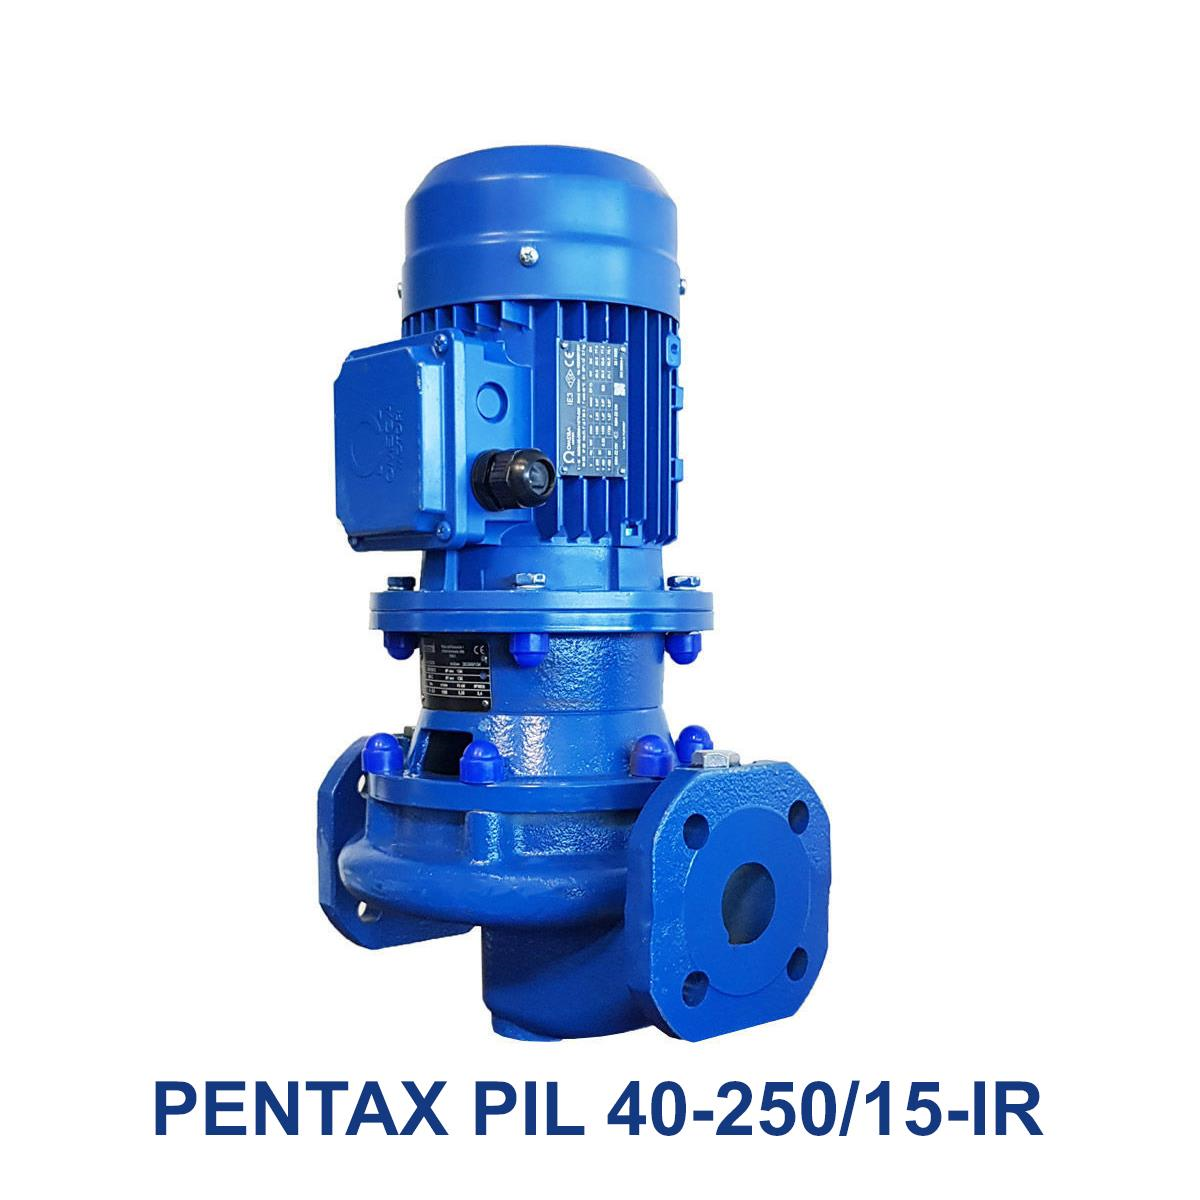 PENTAX-PIL-40-250-15-IR